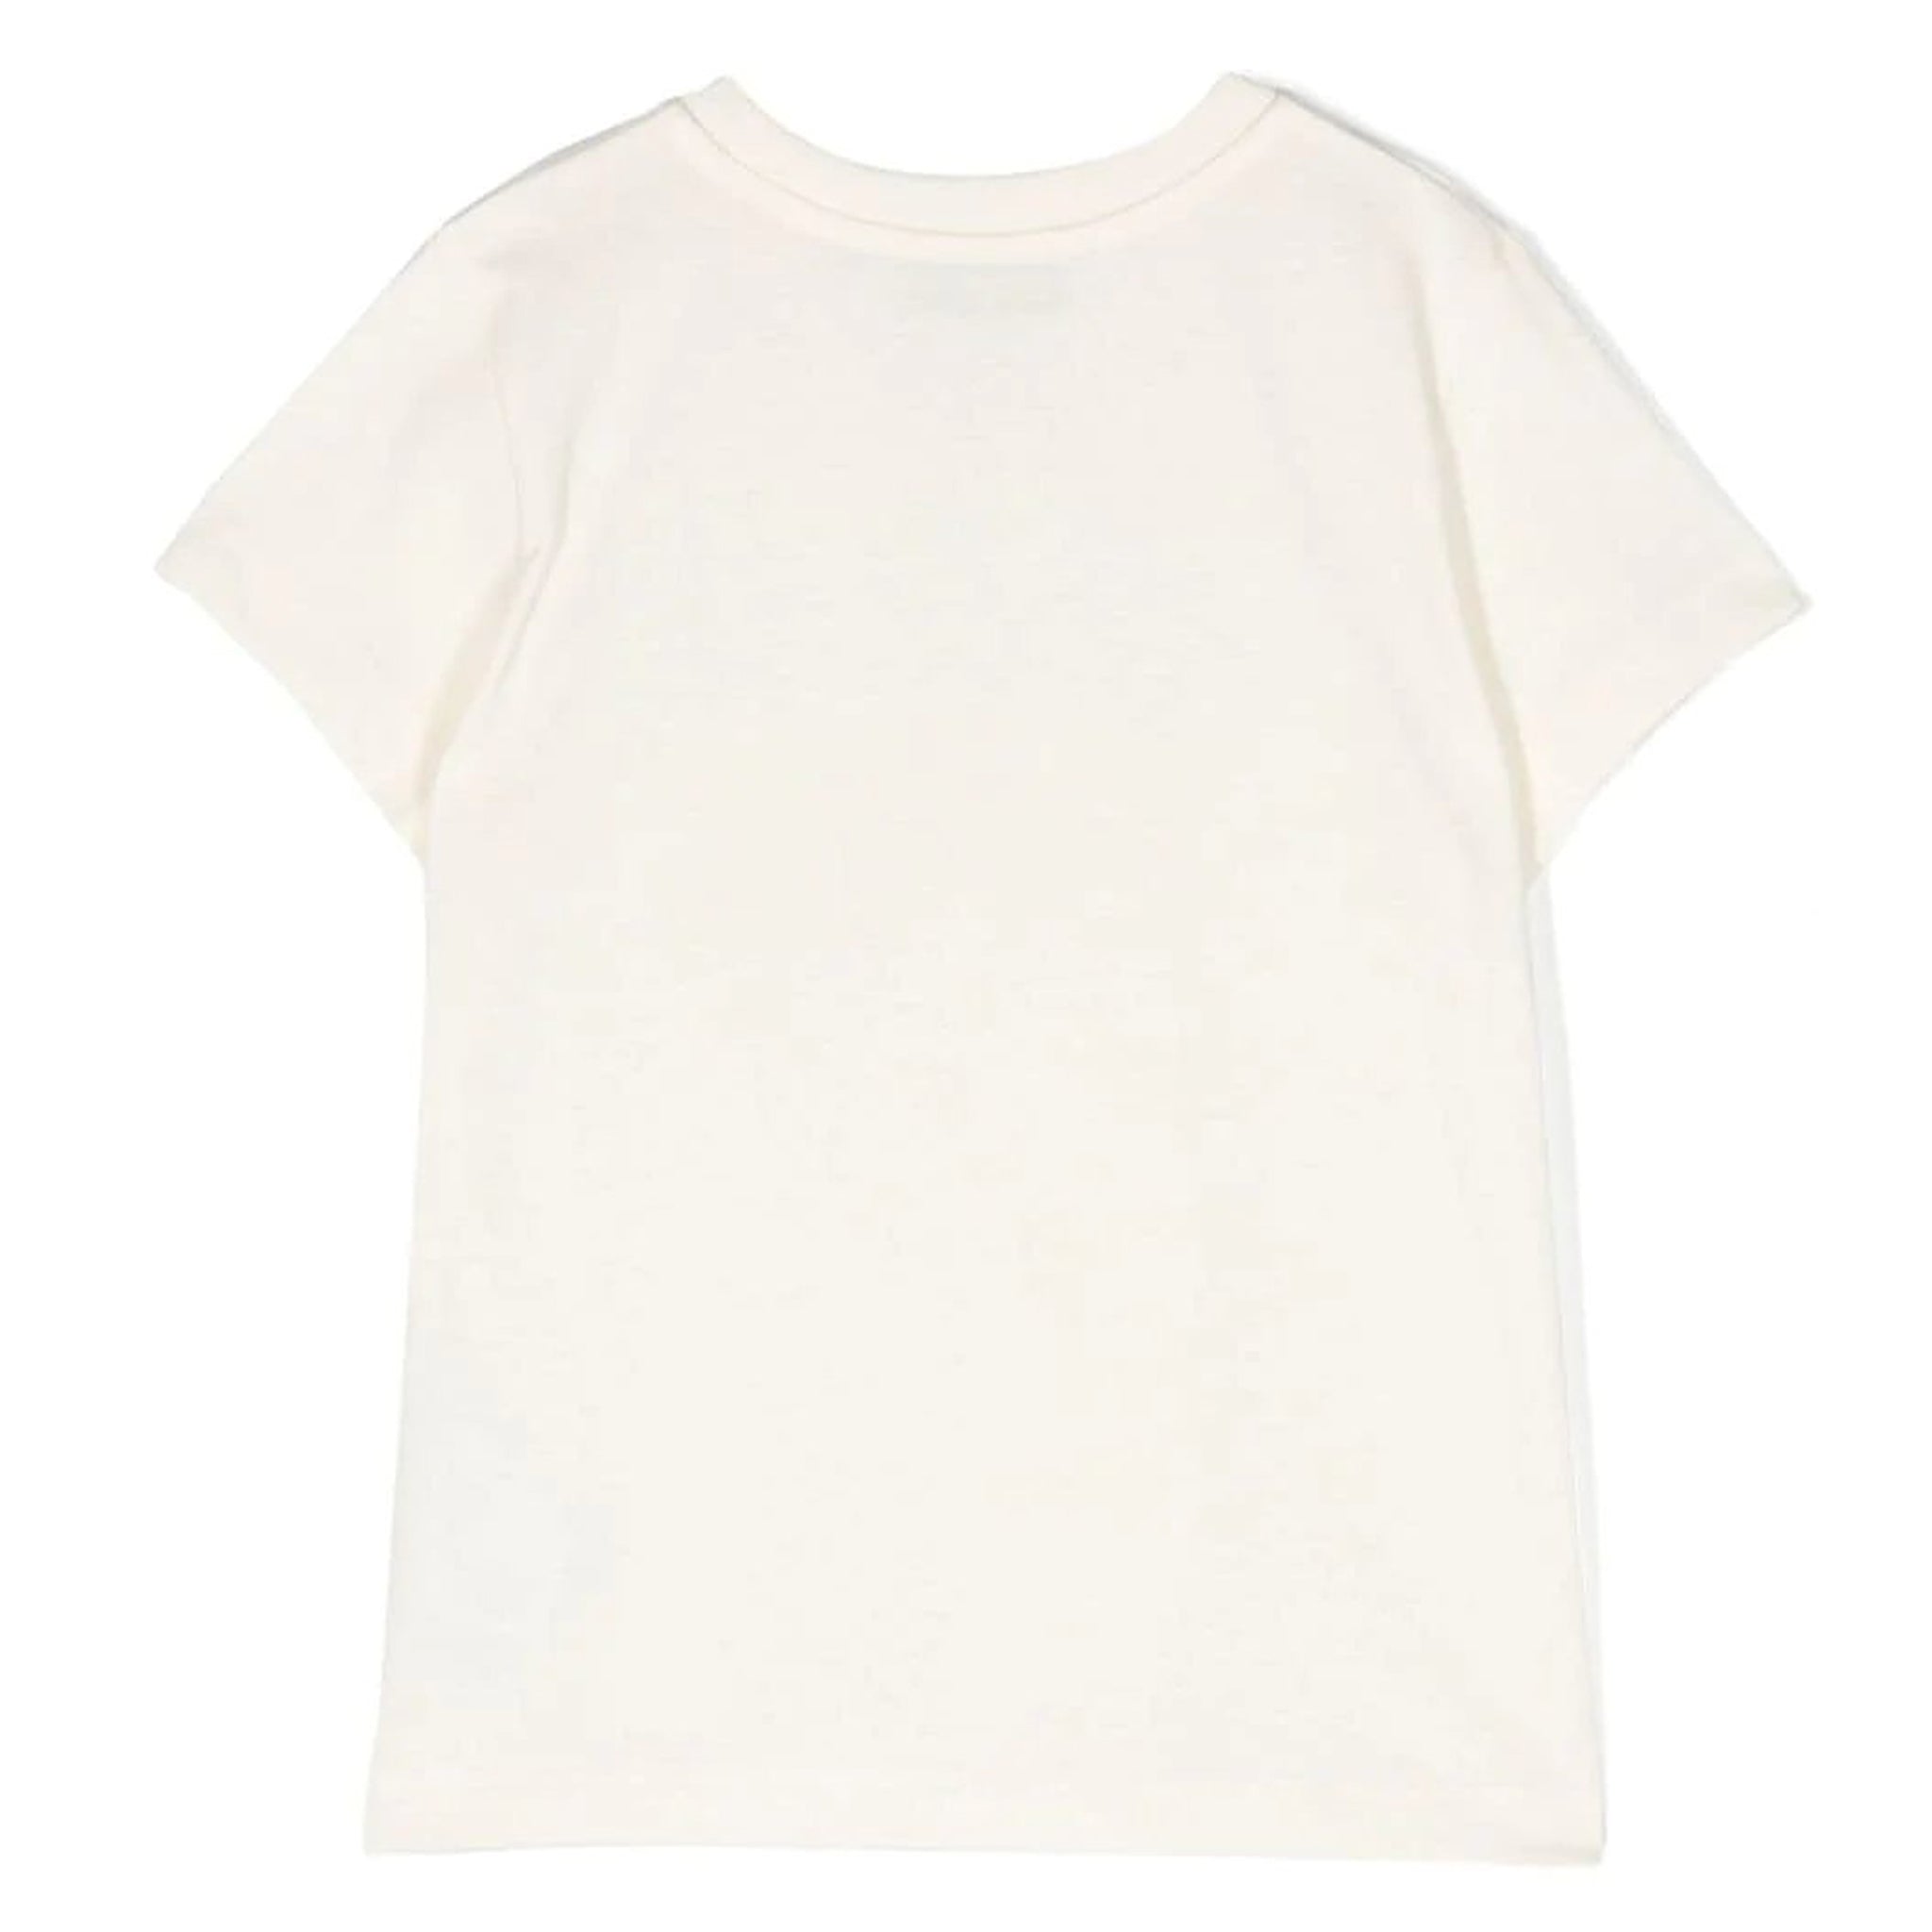 T-shirt Short Sleeve 14A Milk Cream 100%CO